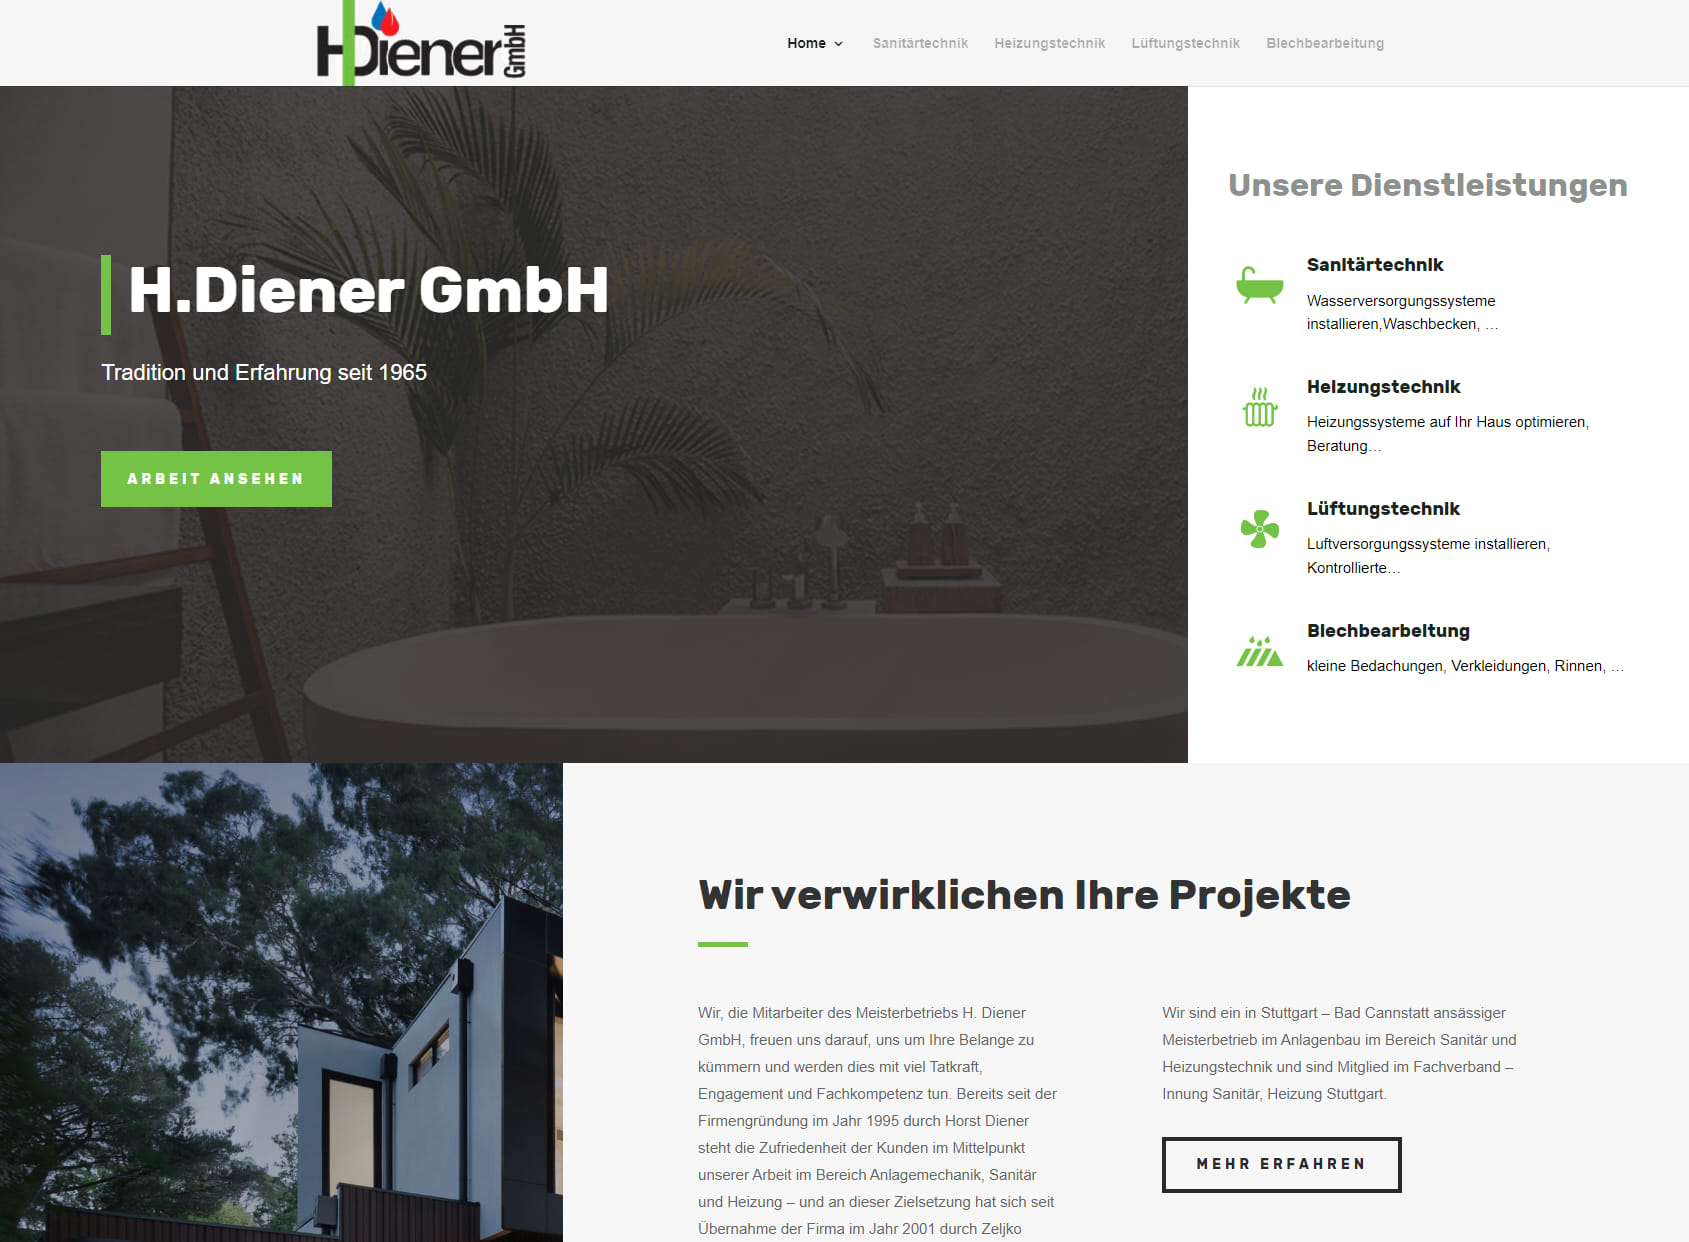 H. Diener GmbH